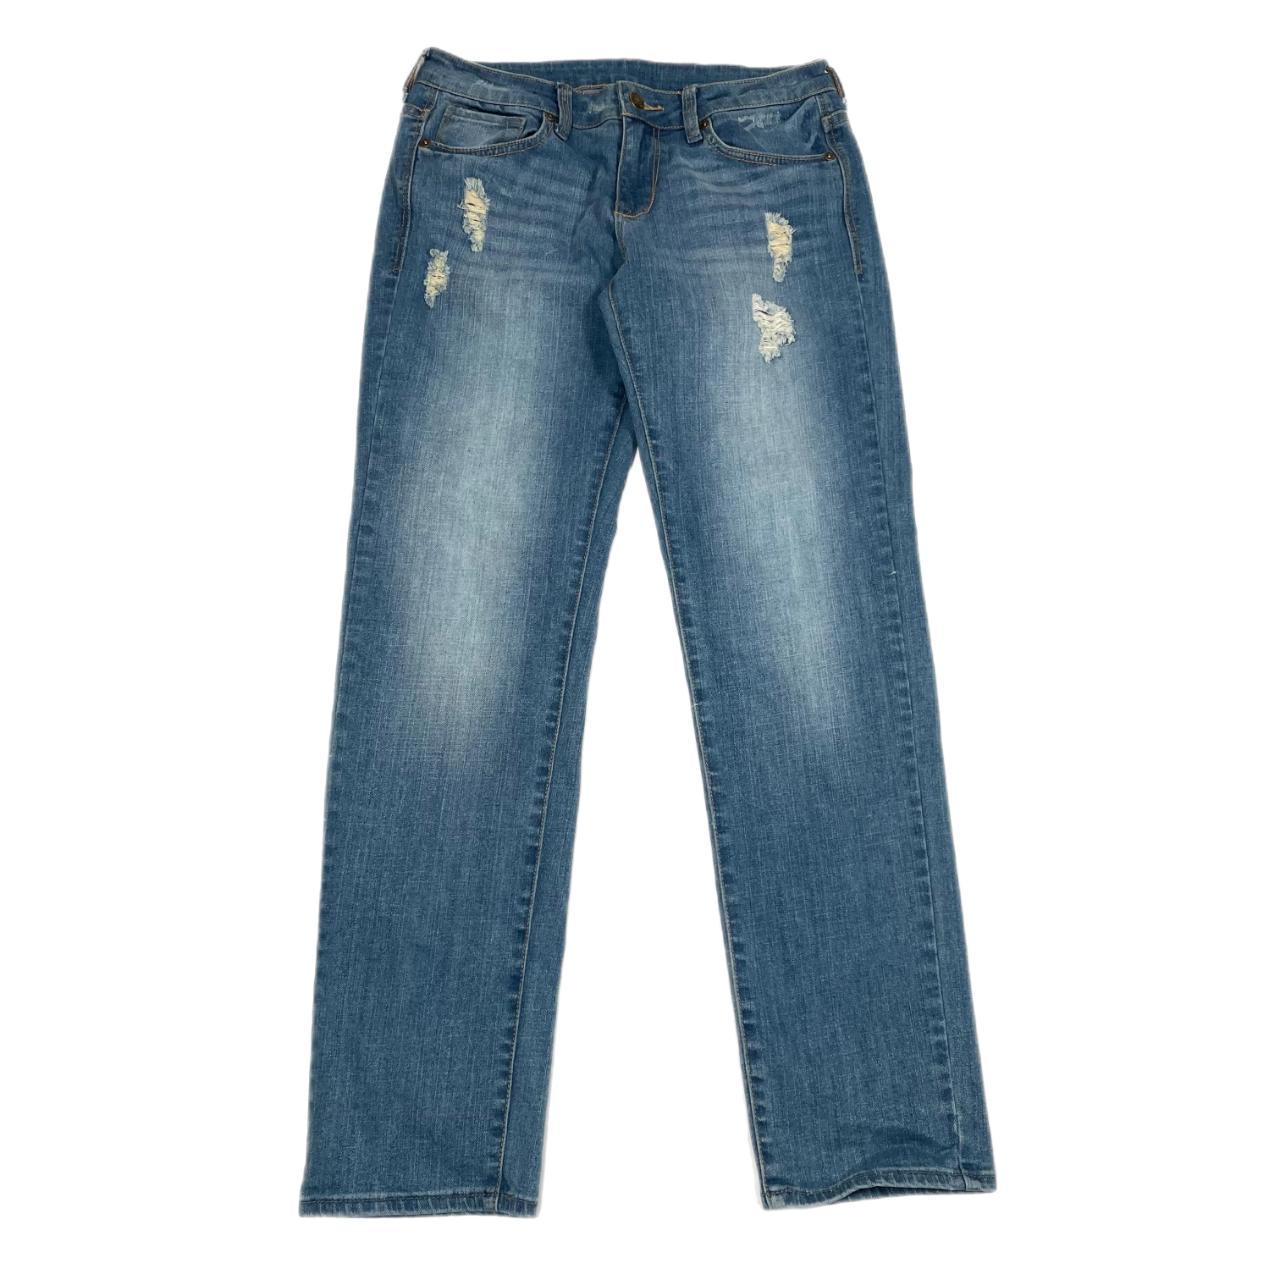 Vintage dELia*s low rise baggy jeans • Women's Size... - Depop